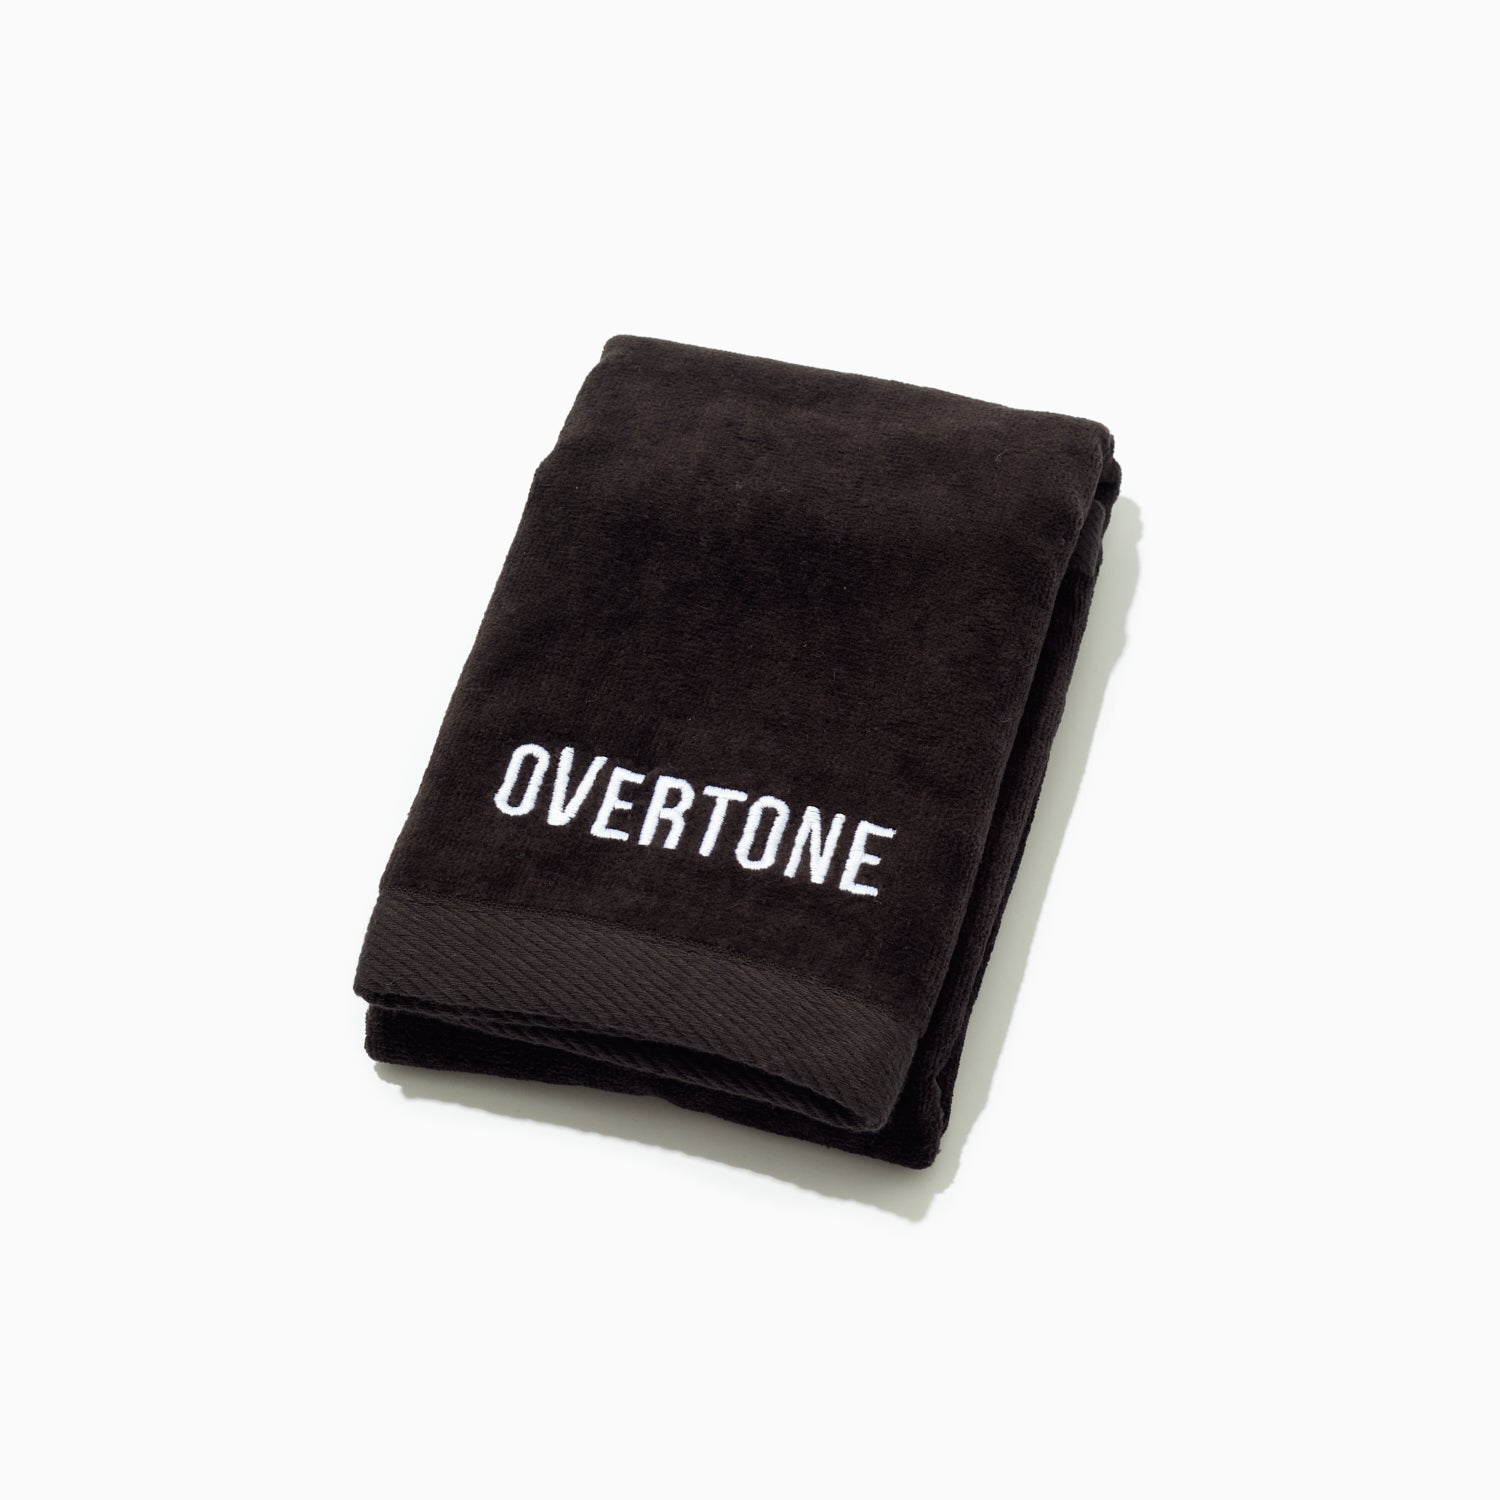 oVertone Hand Towel